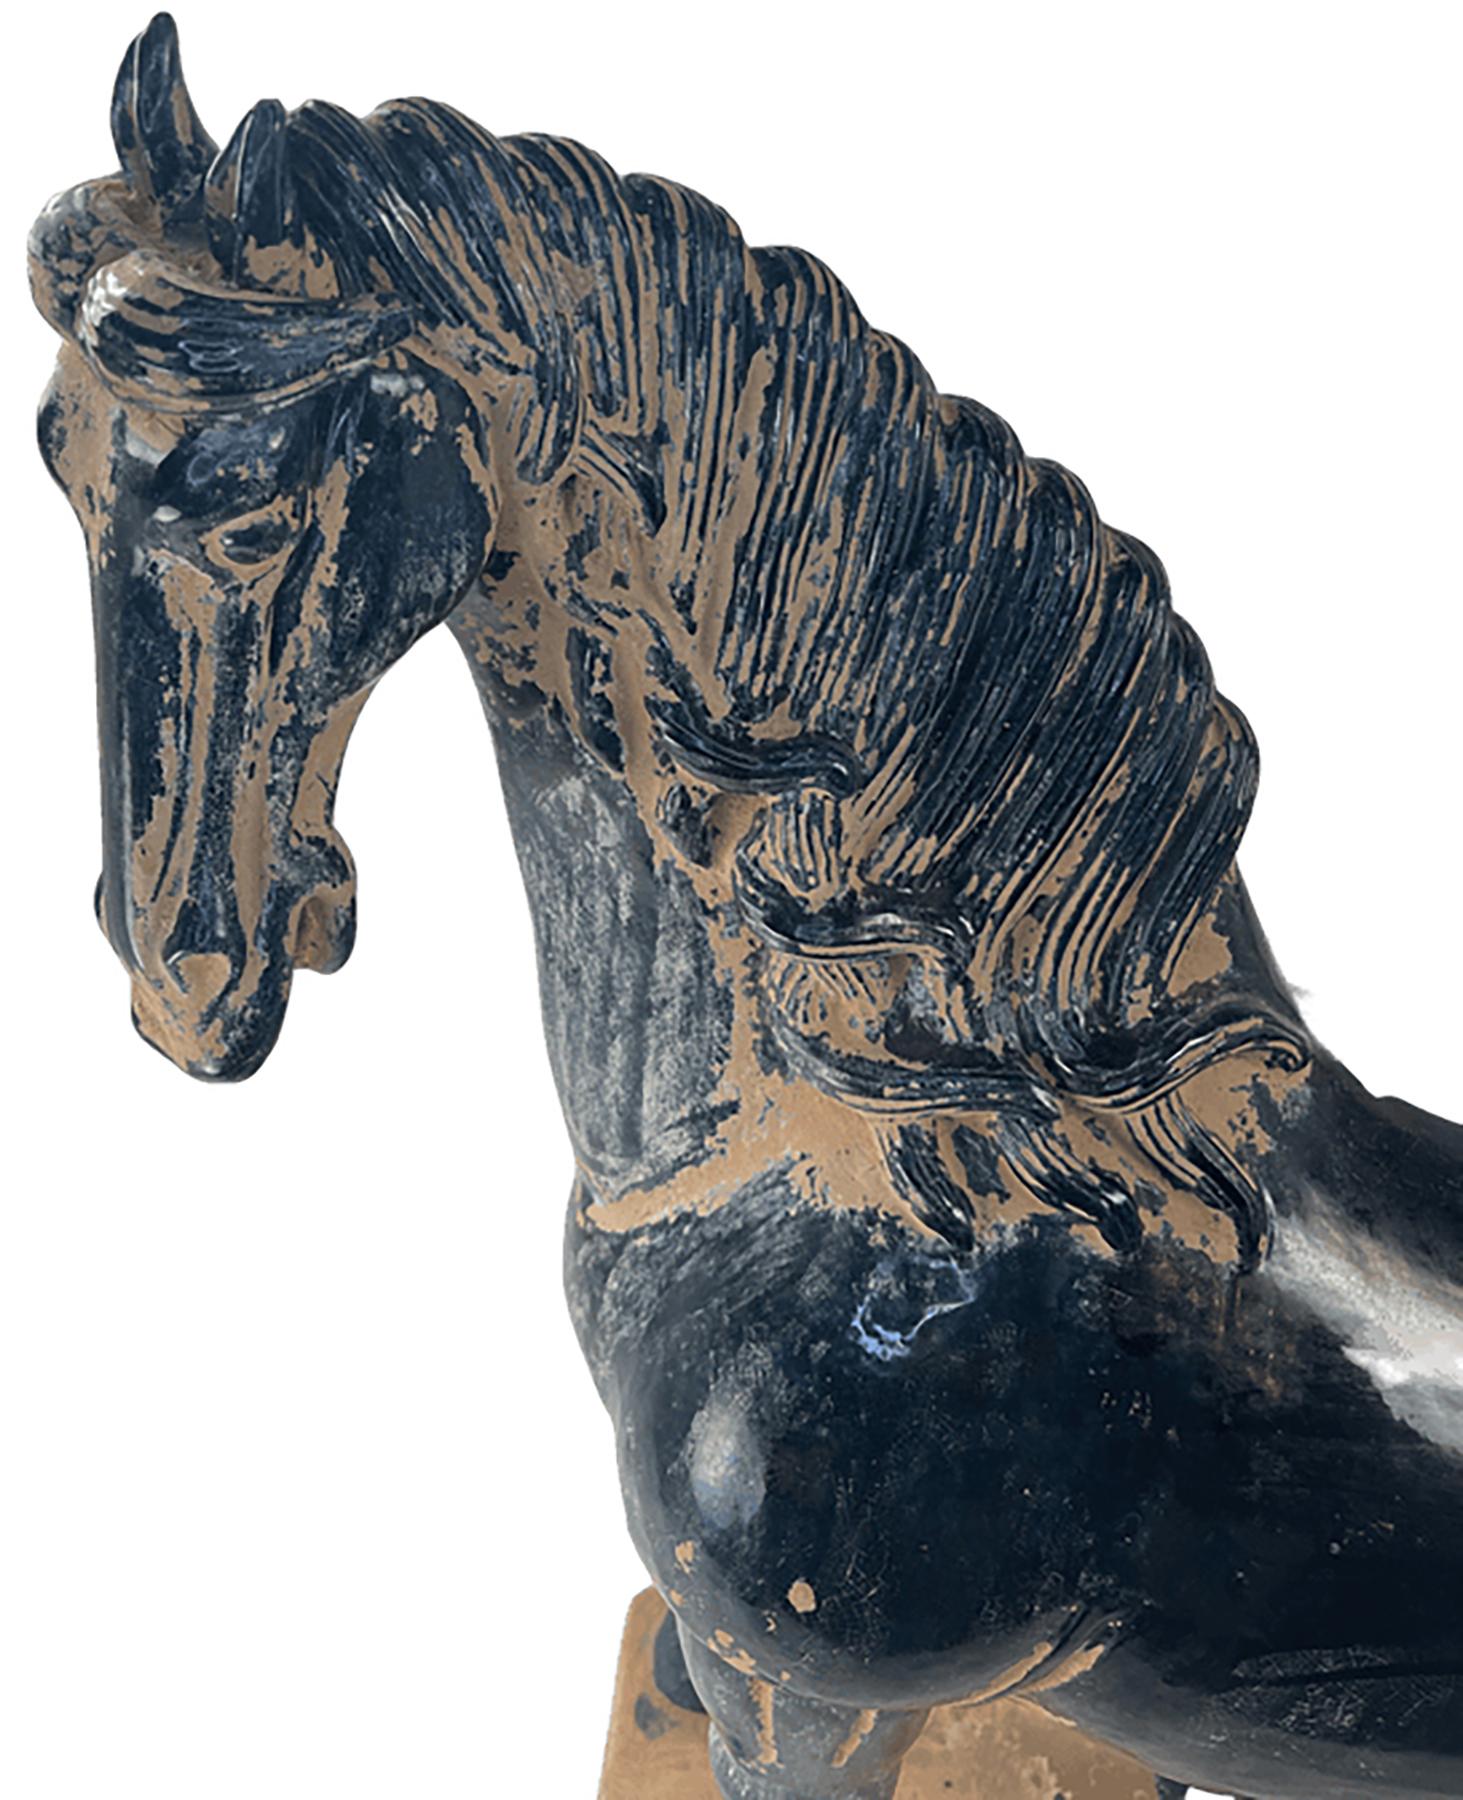 Ein handgefertigtes Terrakotta-Pferd im Stil der Bildhauertradition der Tang-Dynastie. 

Ein Großteil des Körpers des Stücks ist mit einer dunklen indigoblauen Glasur versehen. Einige Ausbleichungen in detaillierten Bereichen sorgen für visuelle